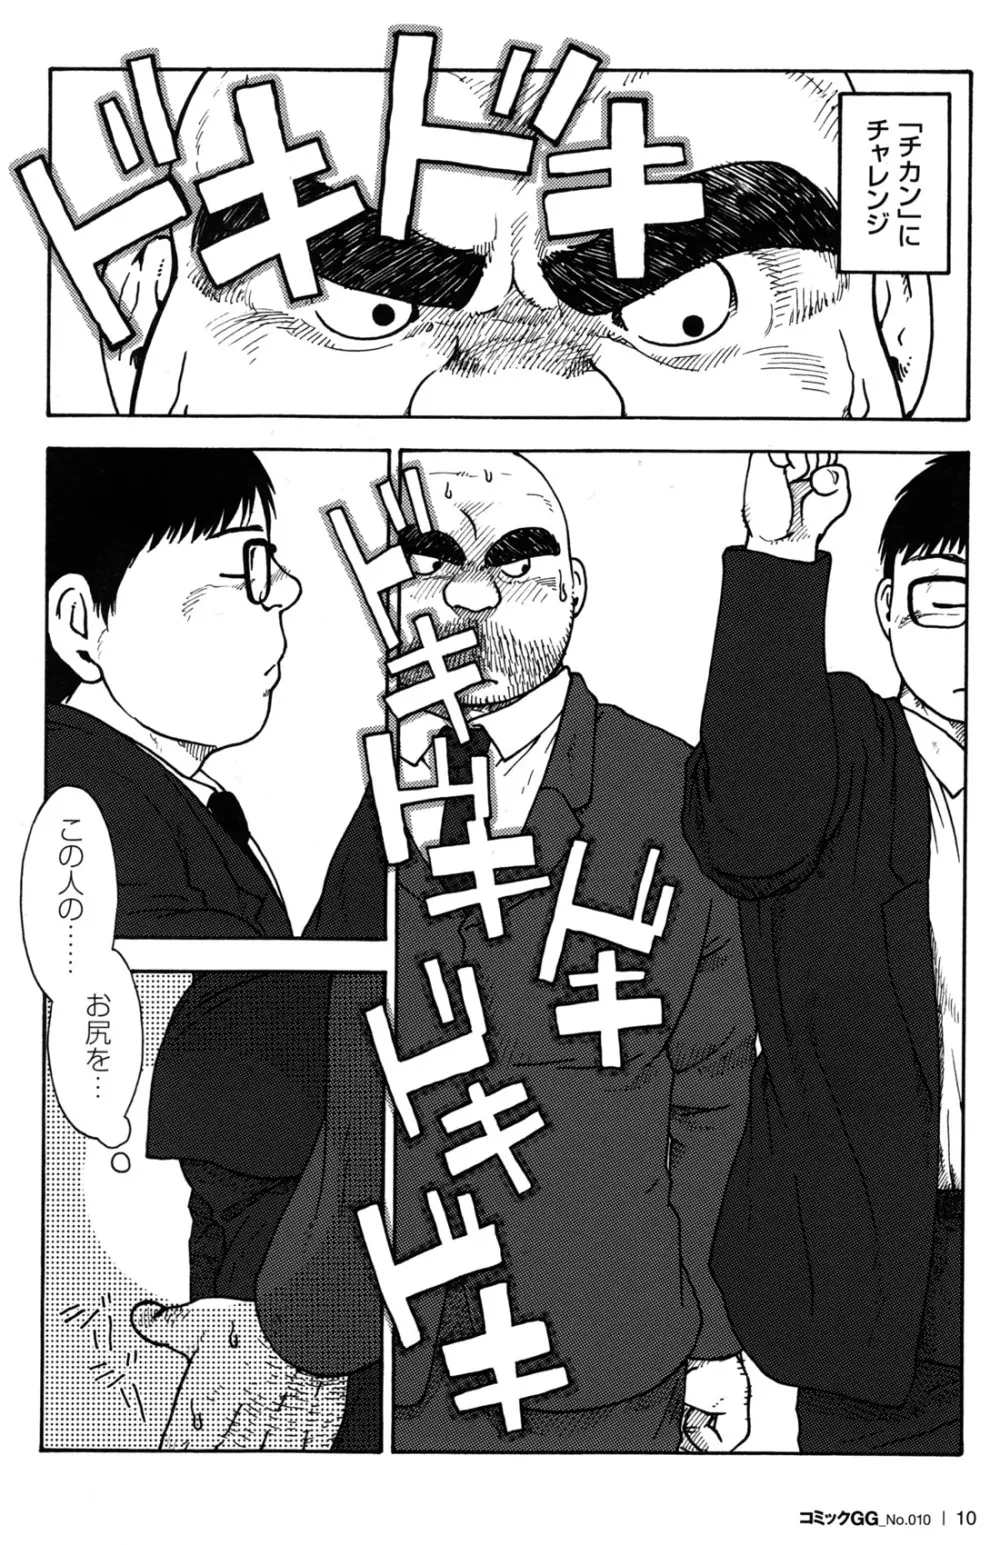 コミックG.G. No.10 のぞき・レイプ・痴漢 12ページ